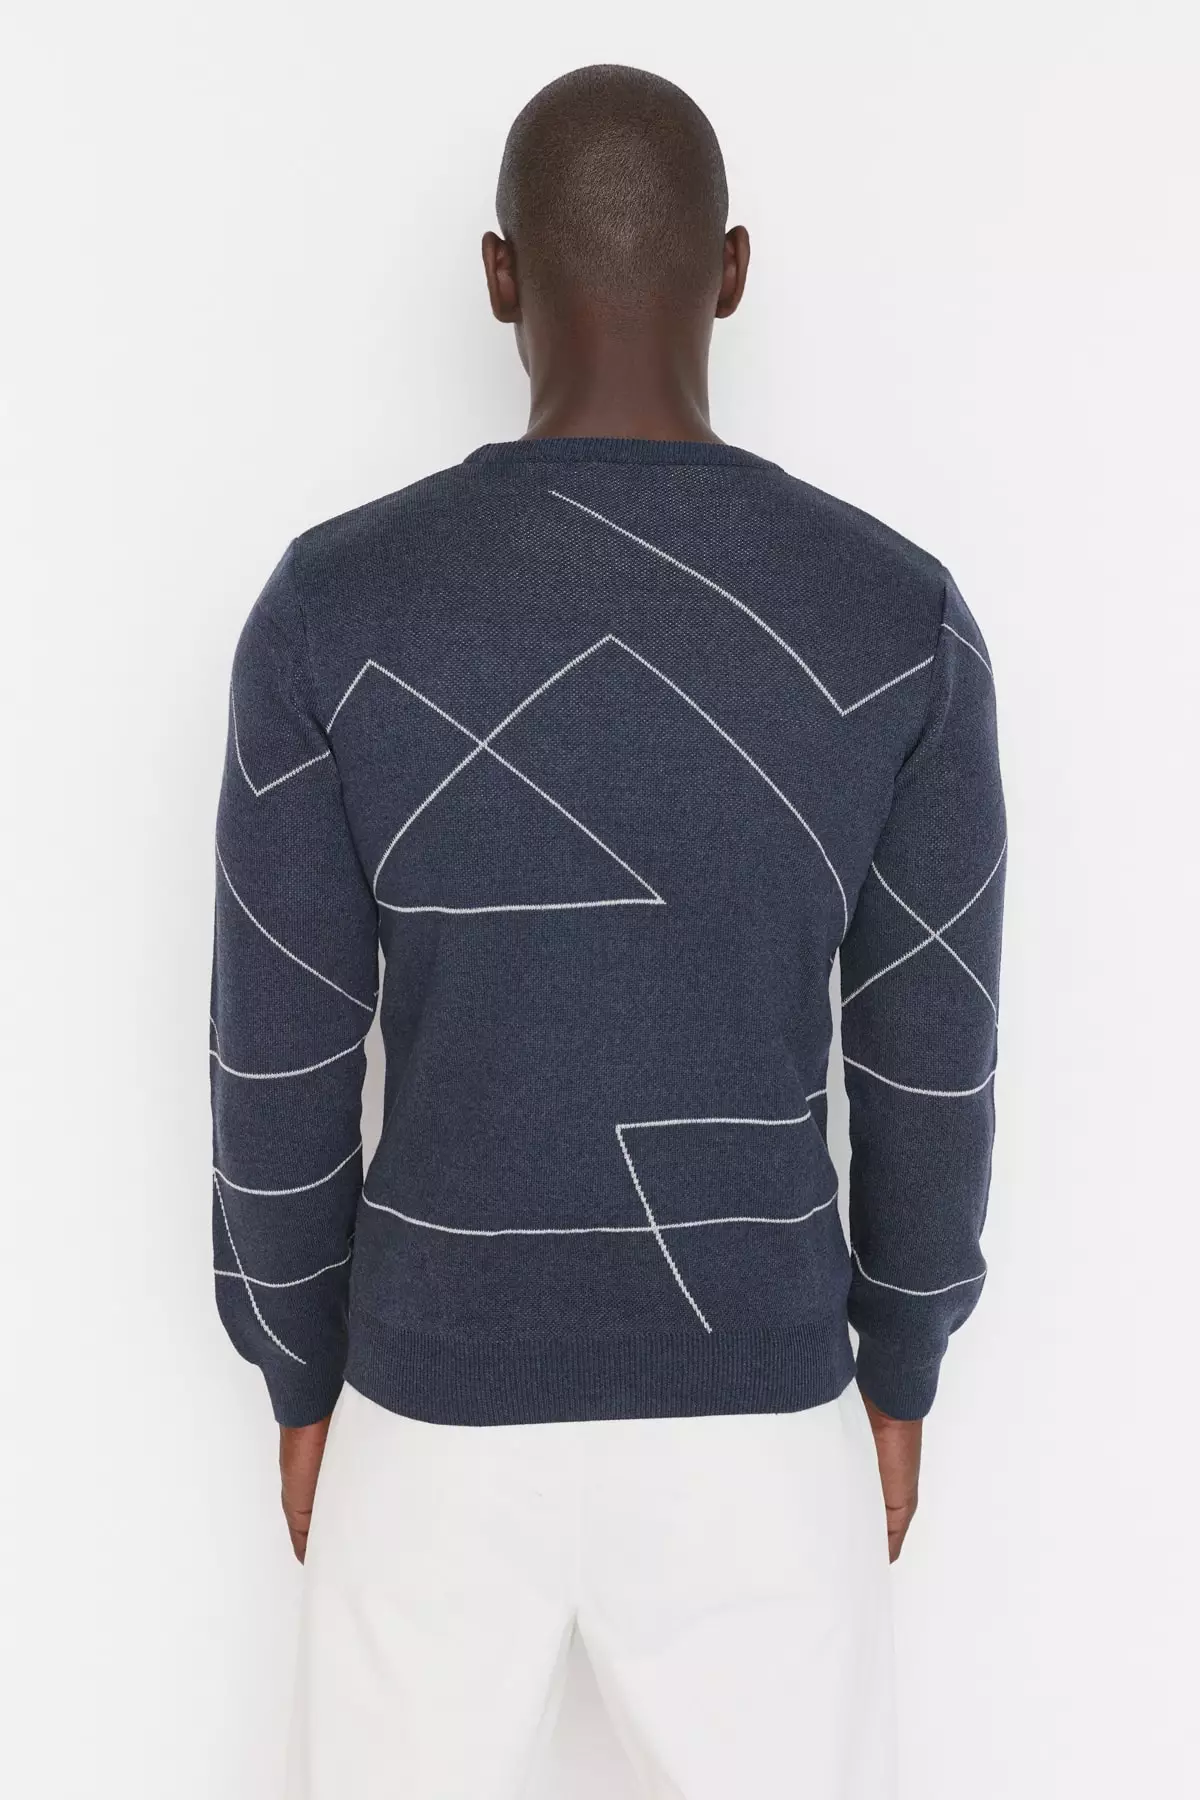 Blue Men's Slim Fit Crew Neck Stripe Patterned Knitwear Sweater